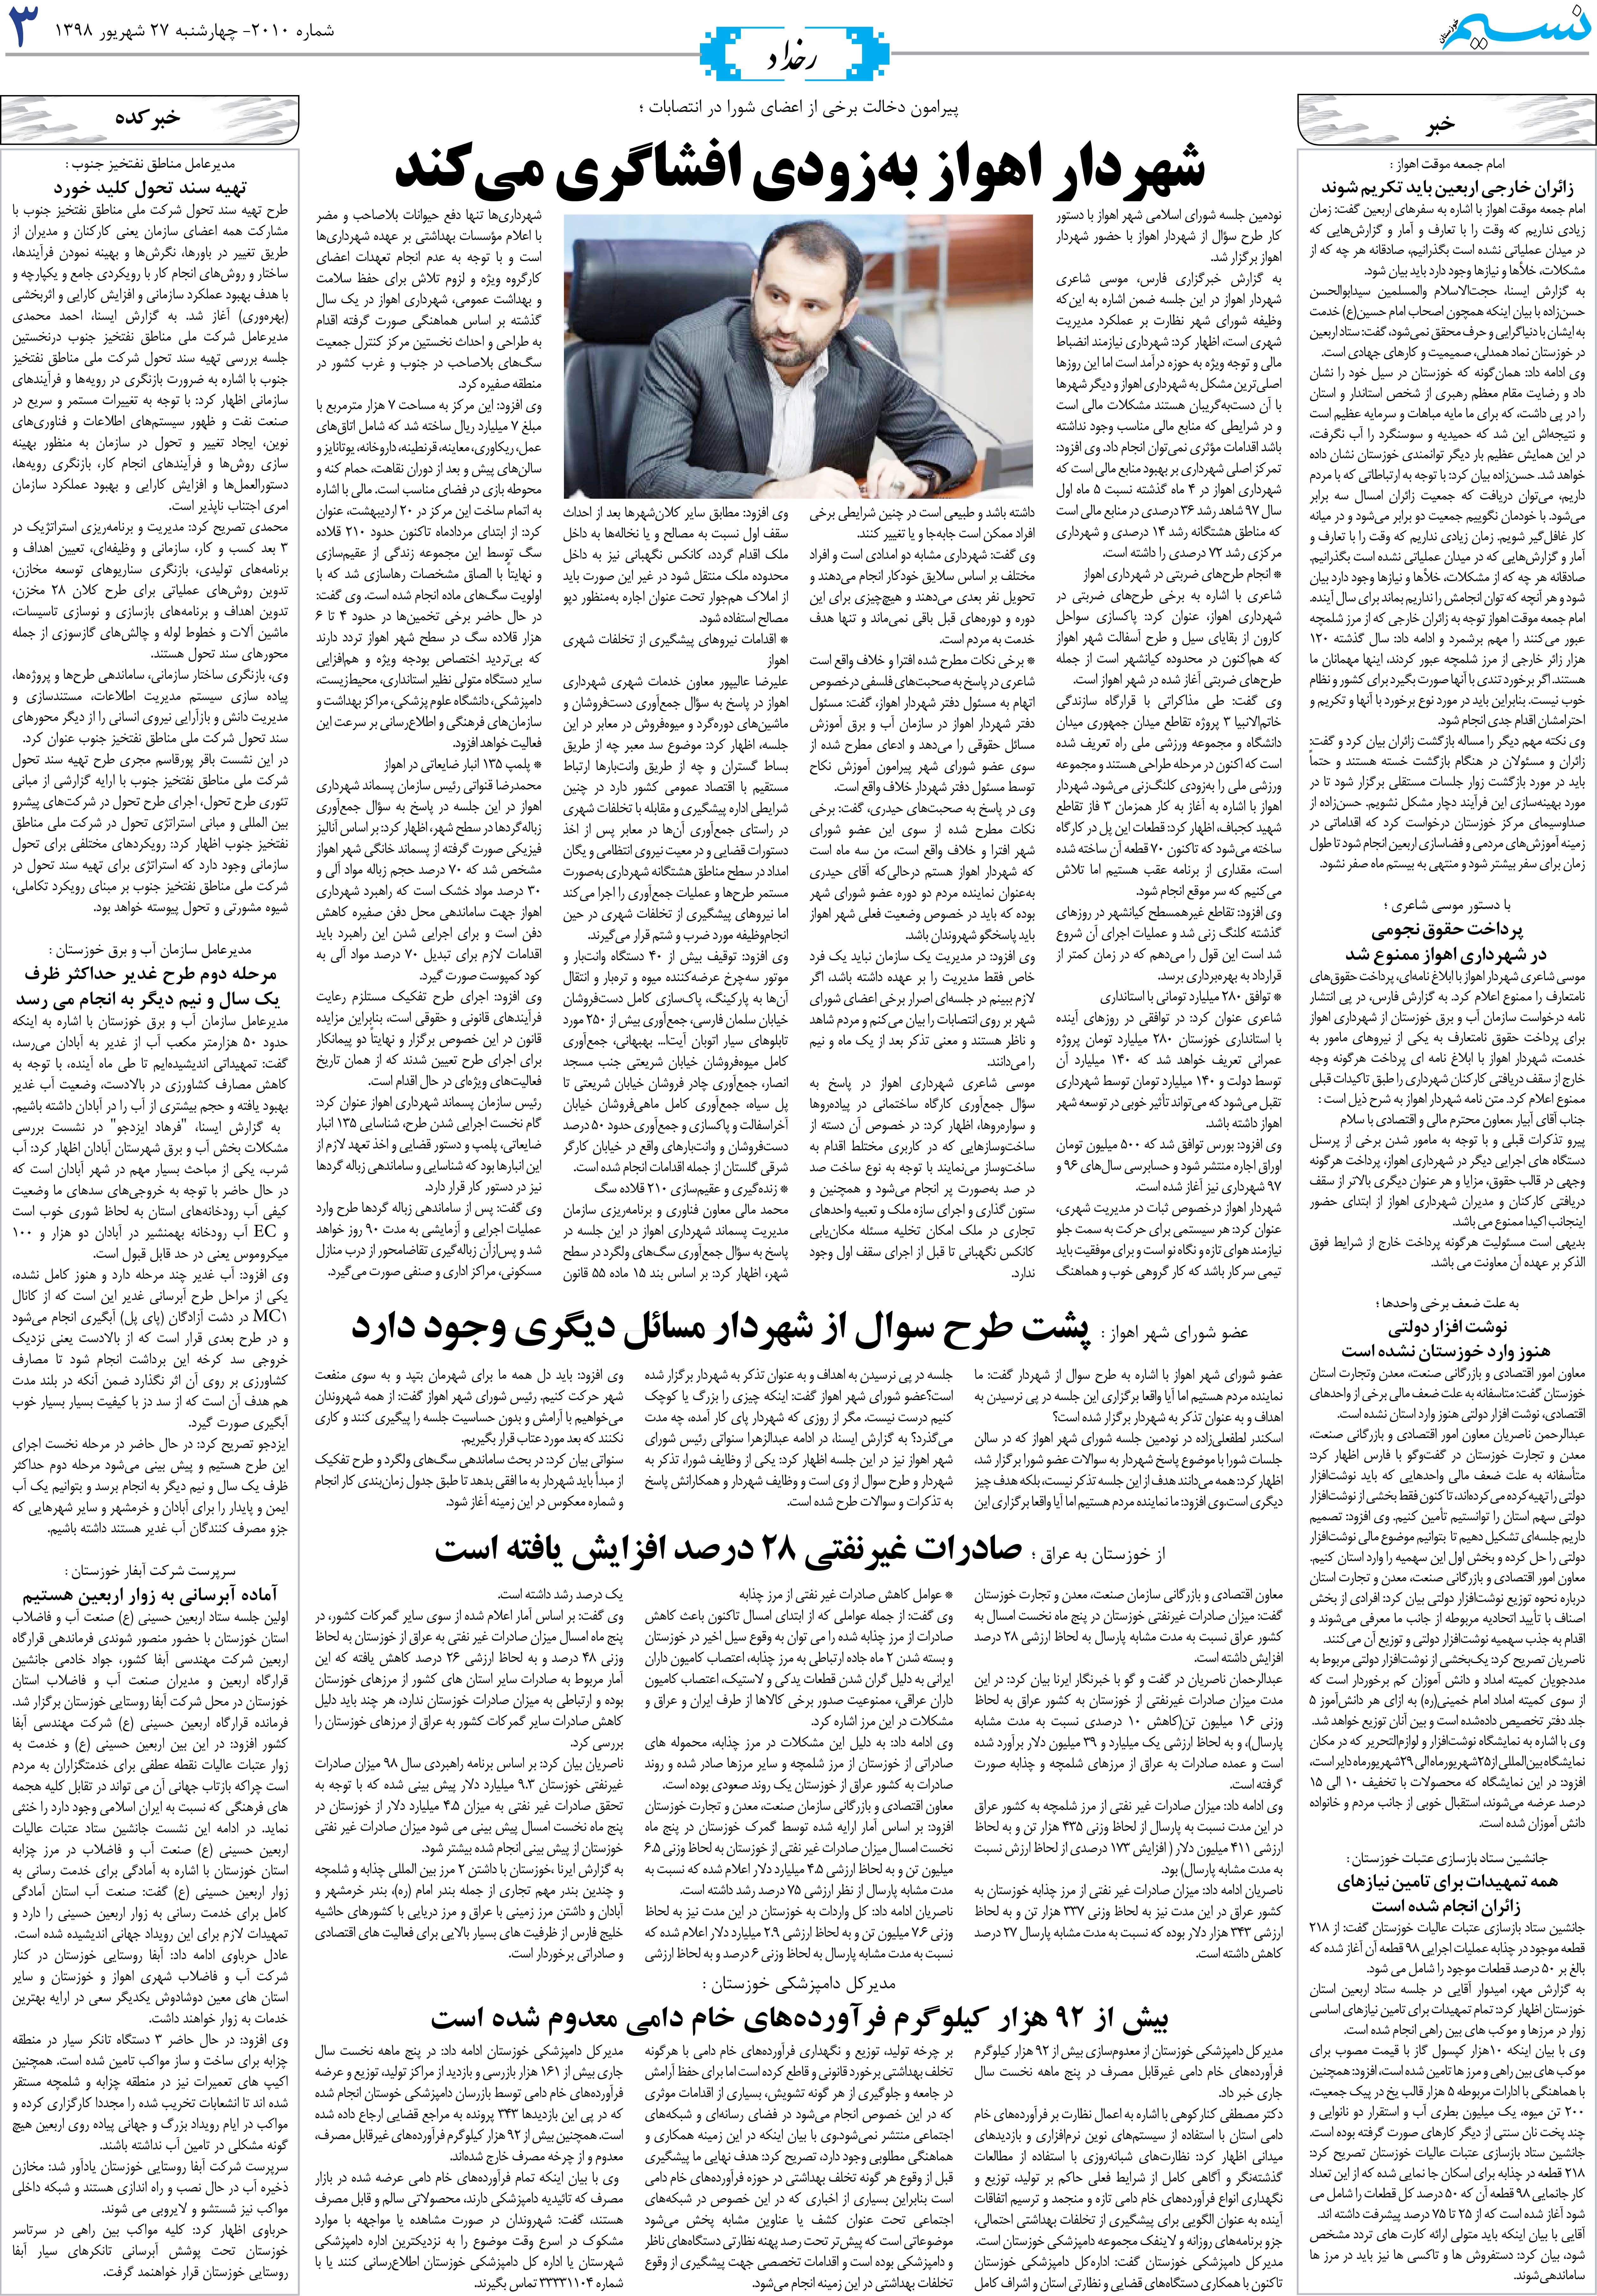 صفحه رخداد روزنامه نسیم شماره 2010